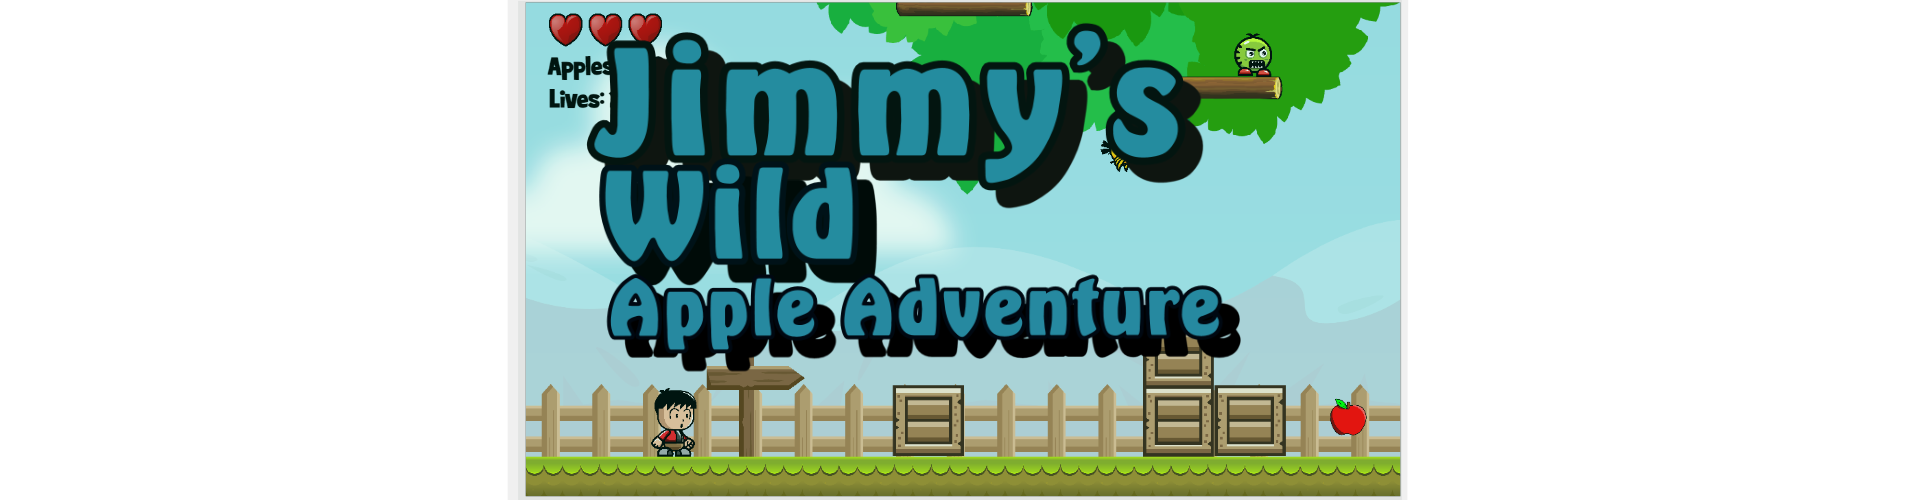 Jimmy's wild apple adventure